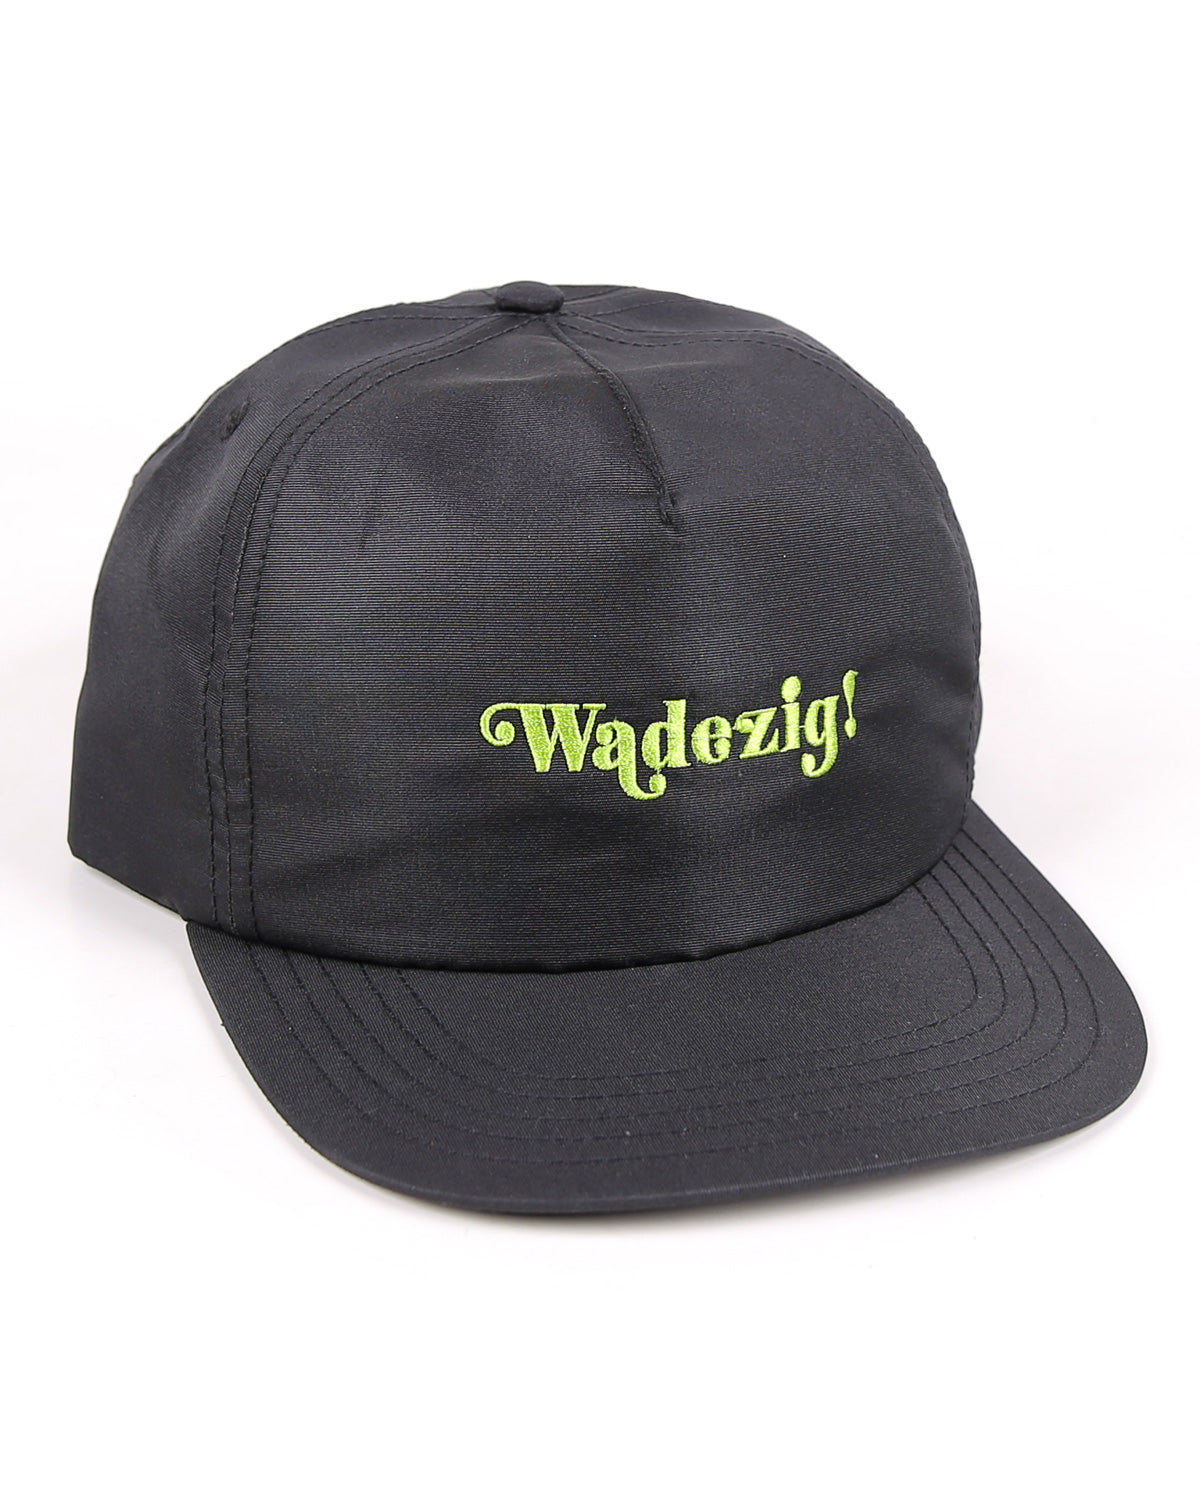 WADEZIG! HEADWEAR - CLASSY LONGSTEAM HAT